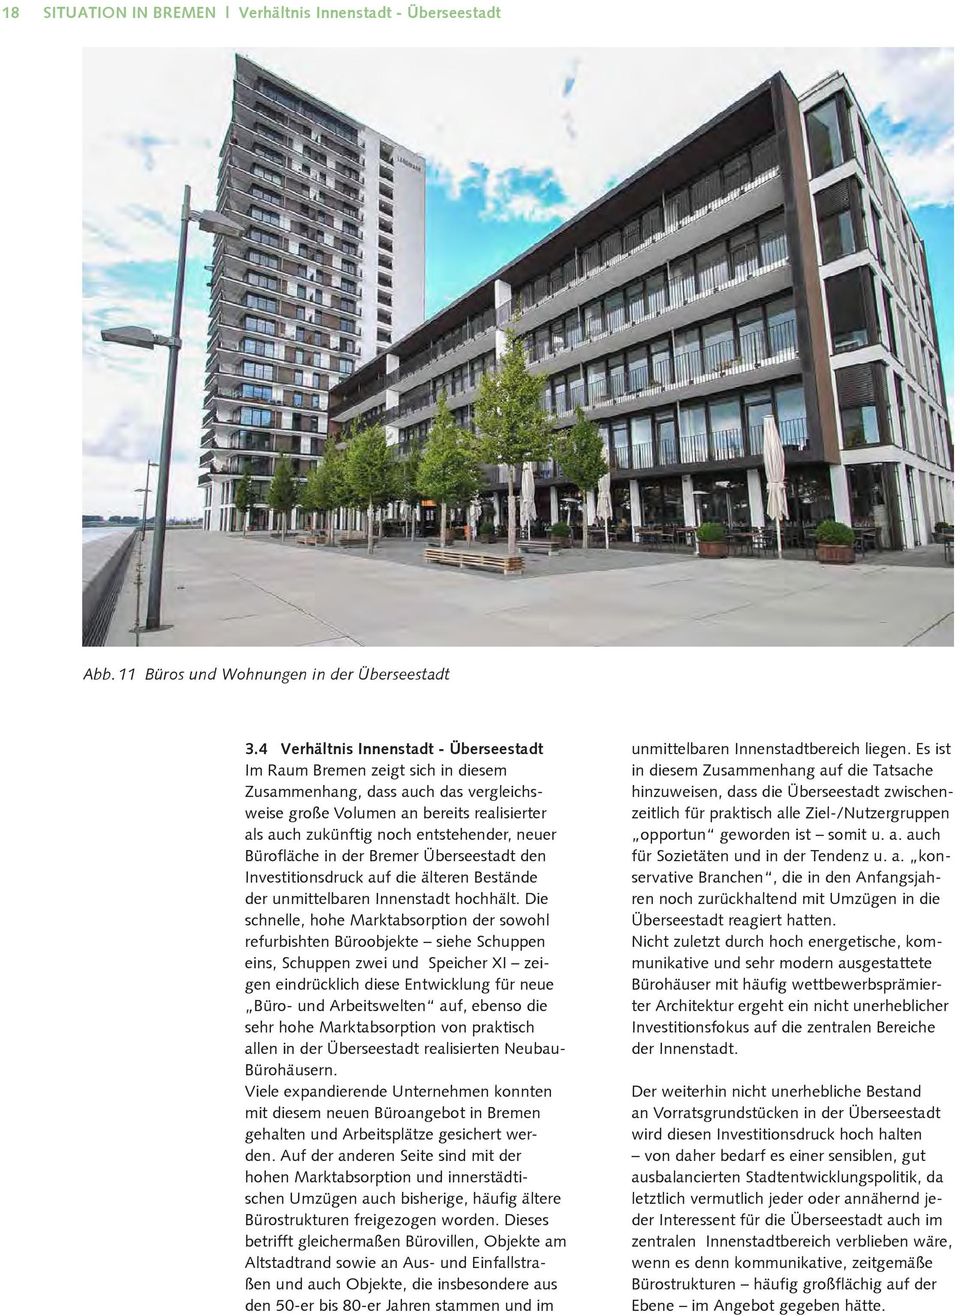 neuer Bürofläche in der Bremer Überseestadt den Investitionsdruck auf die älteren Bestände der unmittelbaren Innenstadt hochhält.